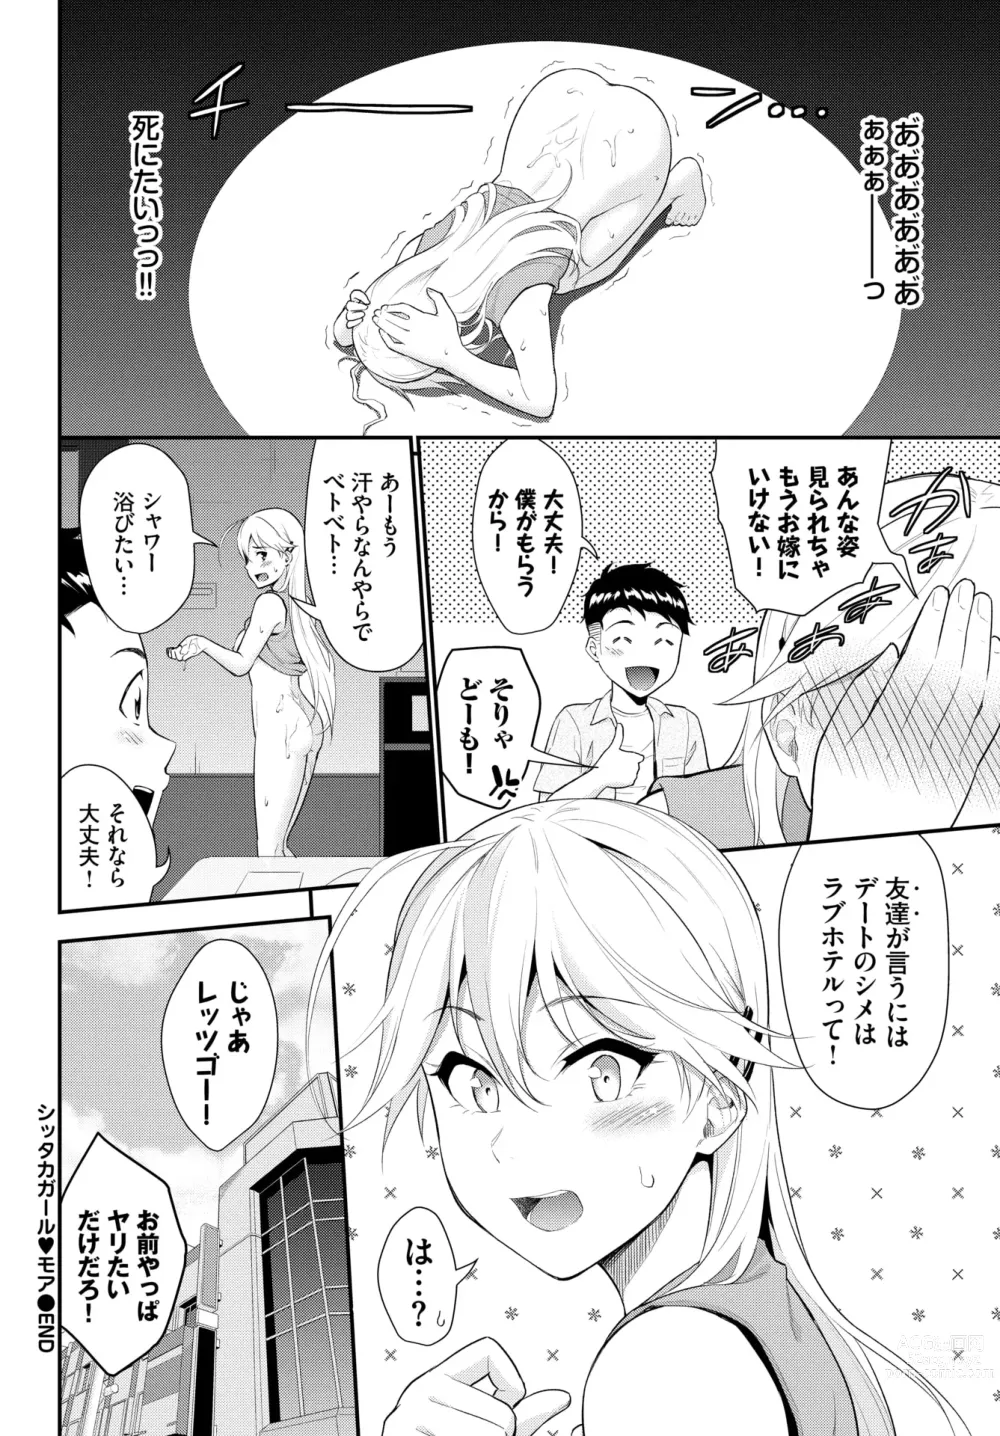 Page 24 of manga Hodad Girl